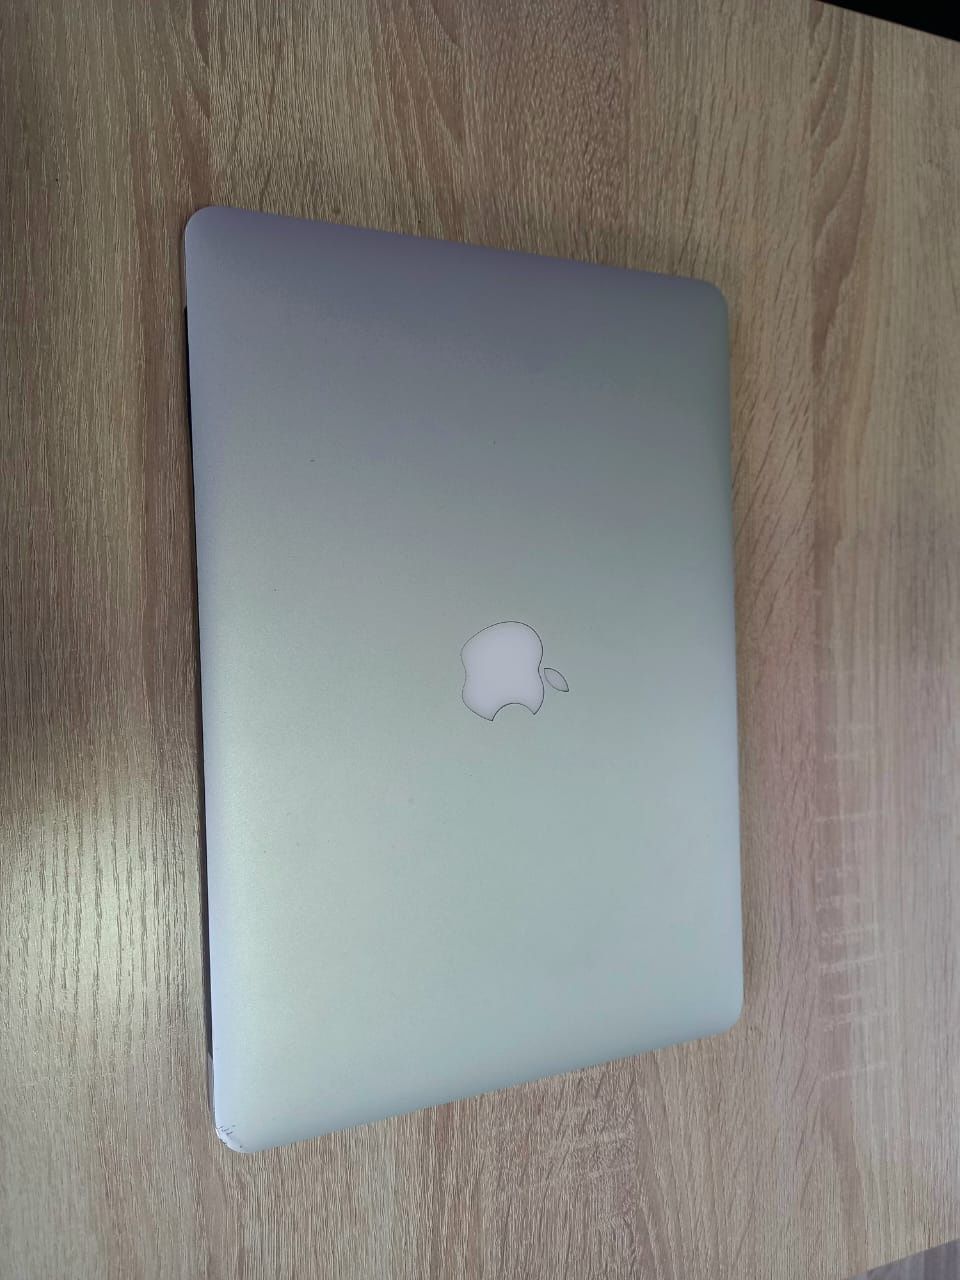 Продам ноутбук MacBook air 13